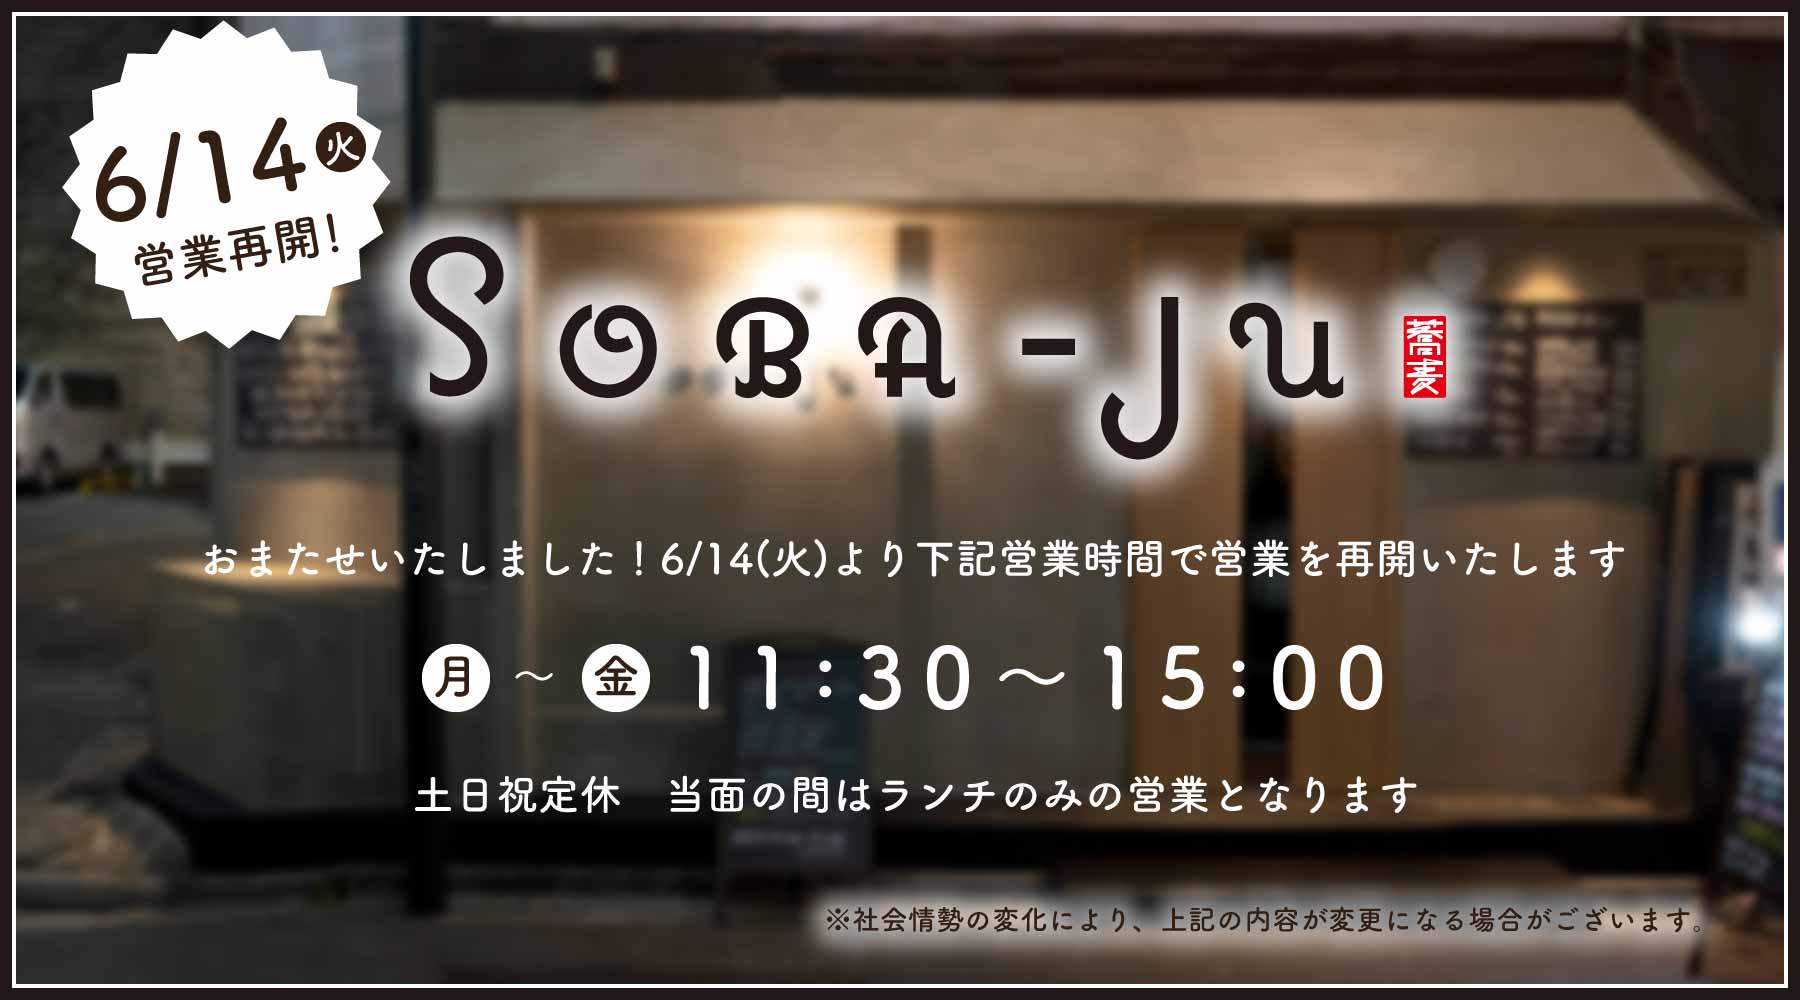 SOBA-JU 営業再開のお知らせ